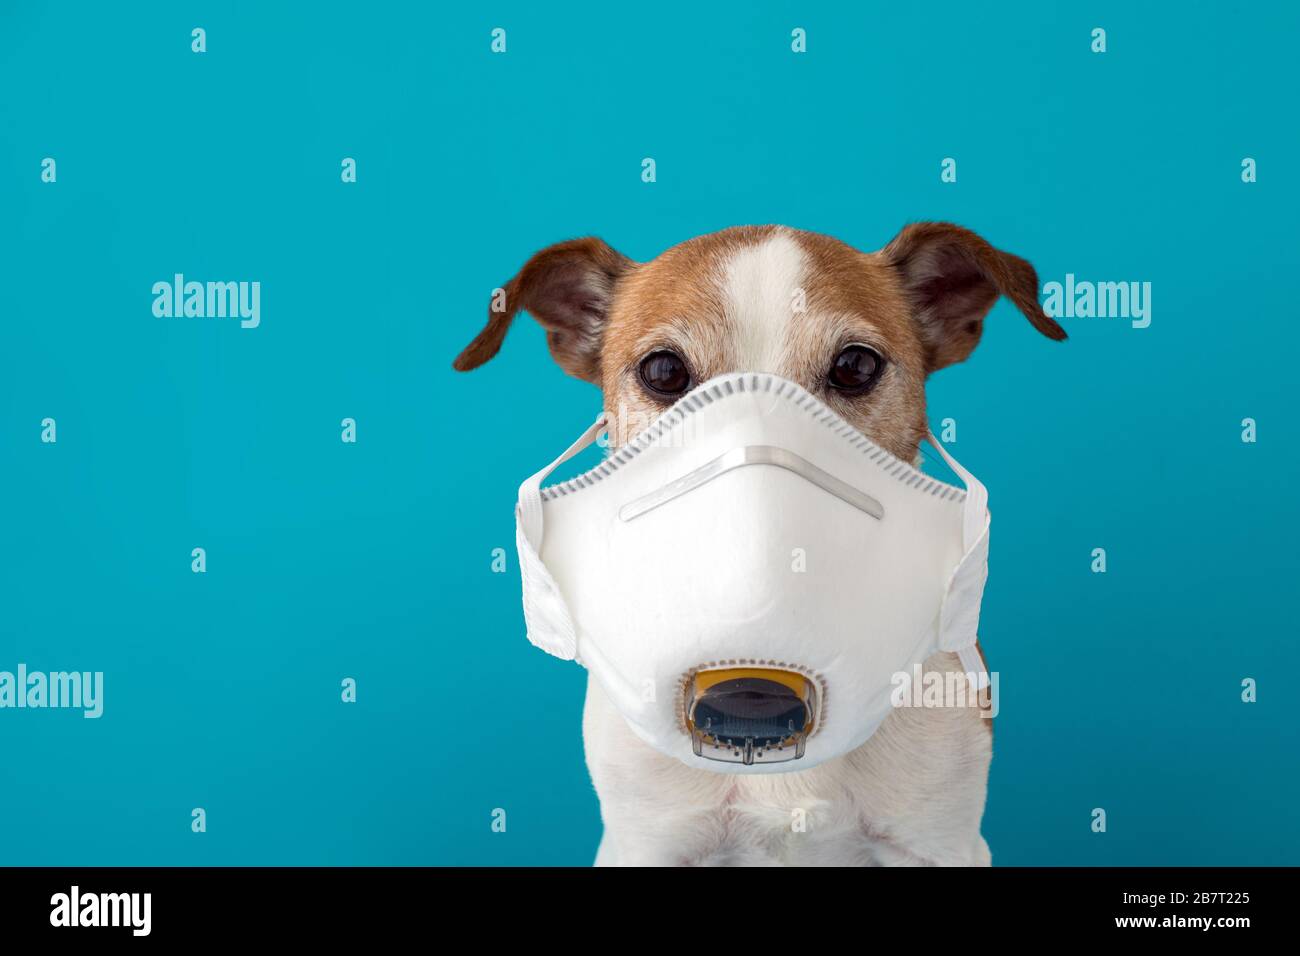 Hund trägt eine medizinische Gesichtsmaske, um sich vor Infektionen zu schützen Stockfoto